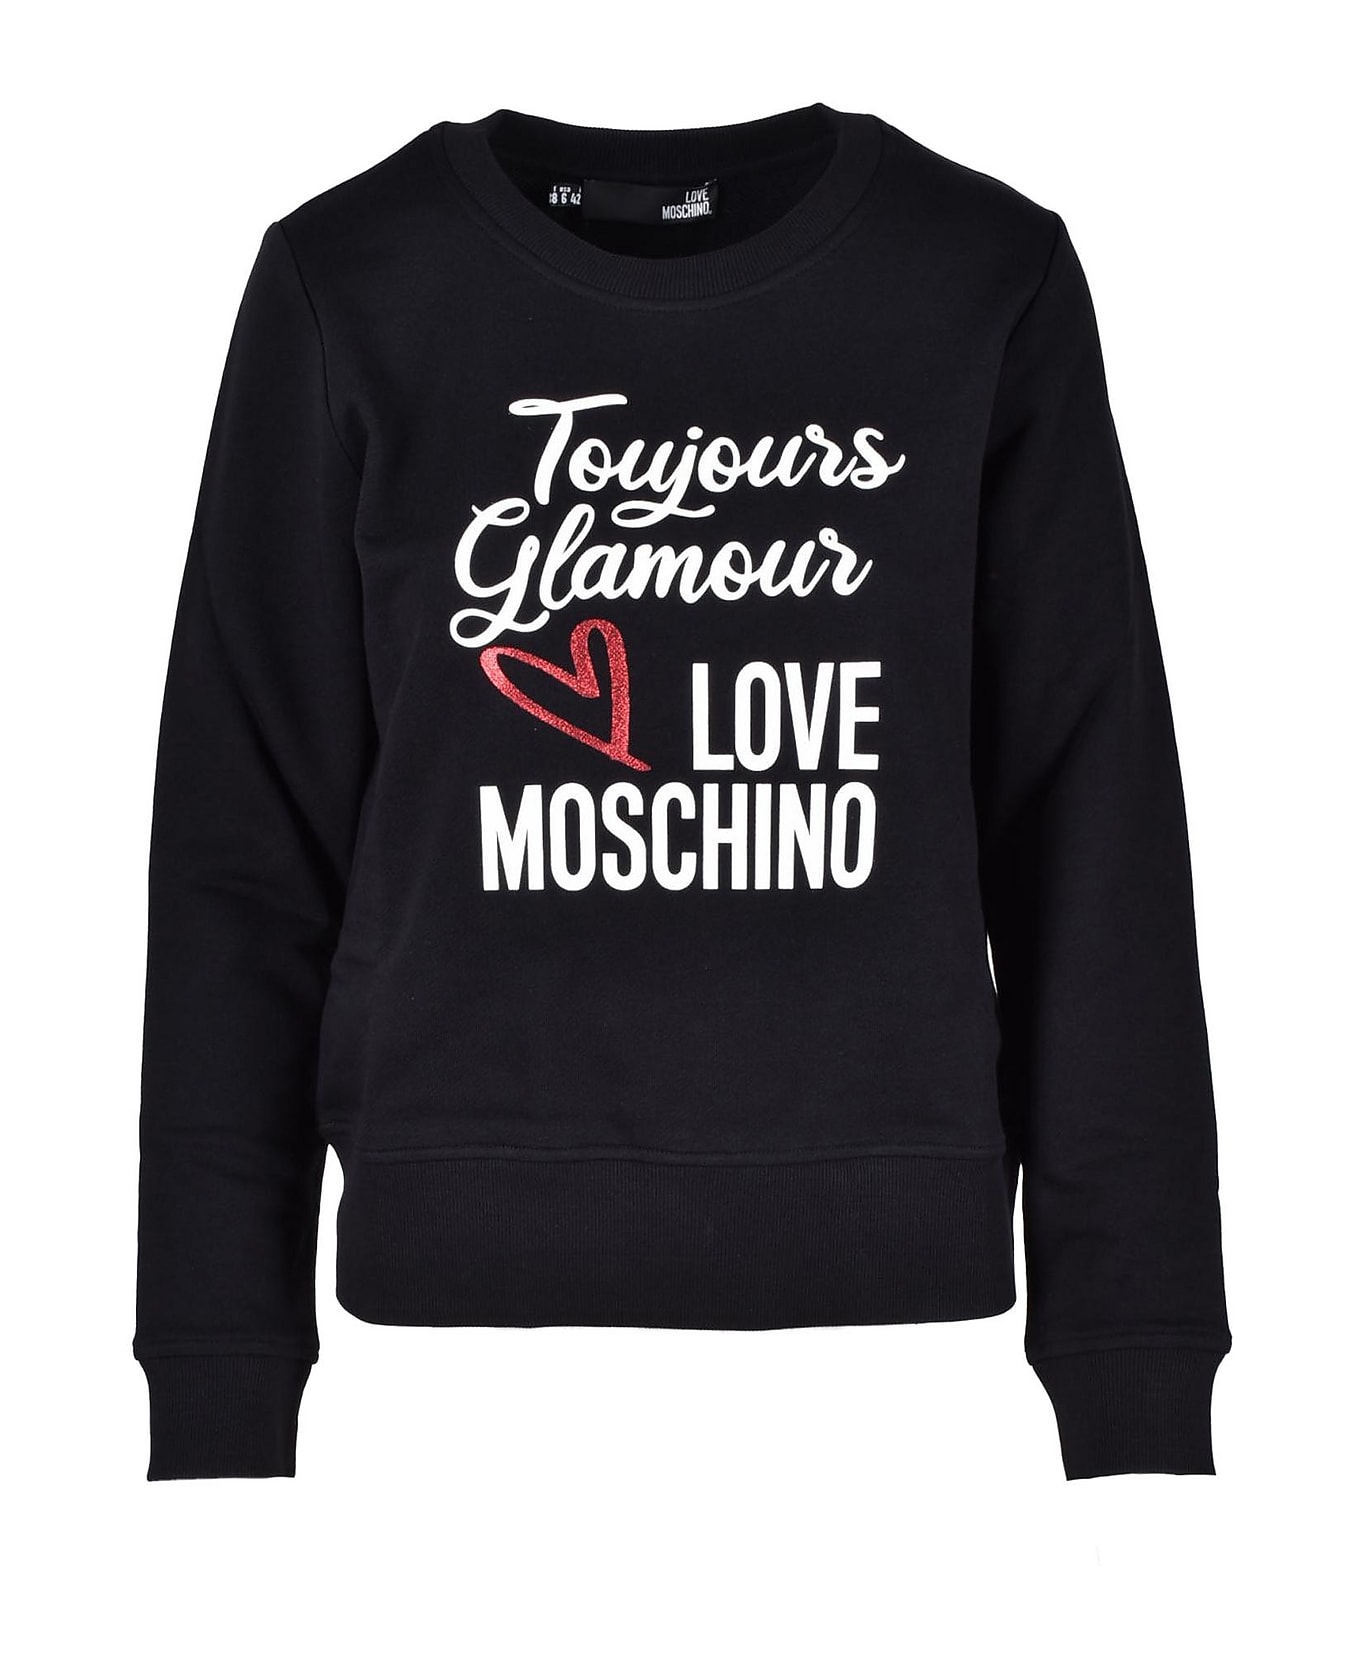 Love Moschino Women's Black Sweatshirt - Black